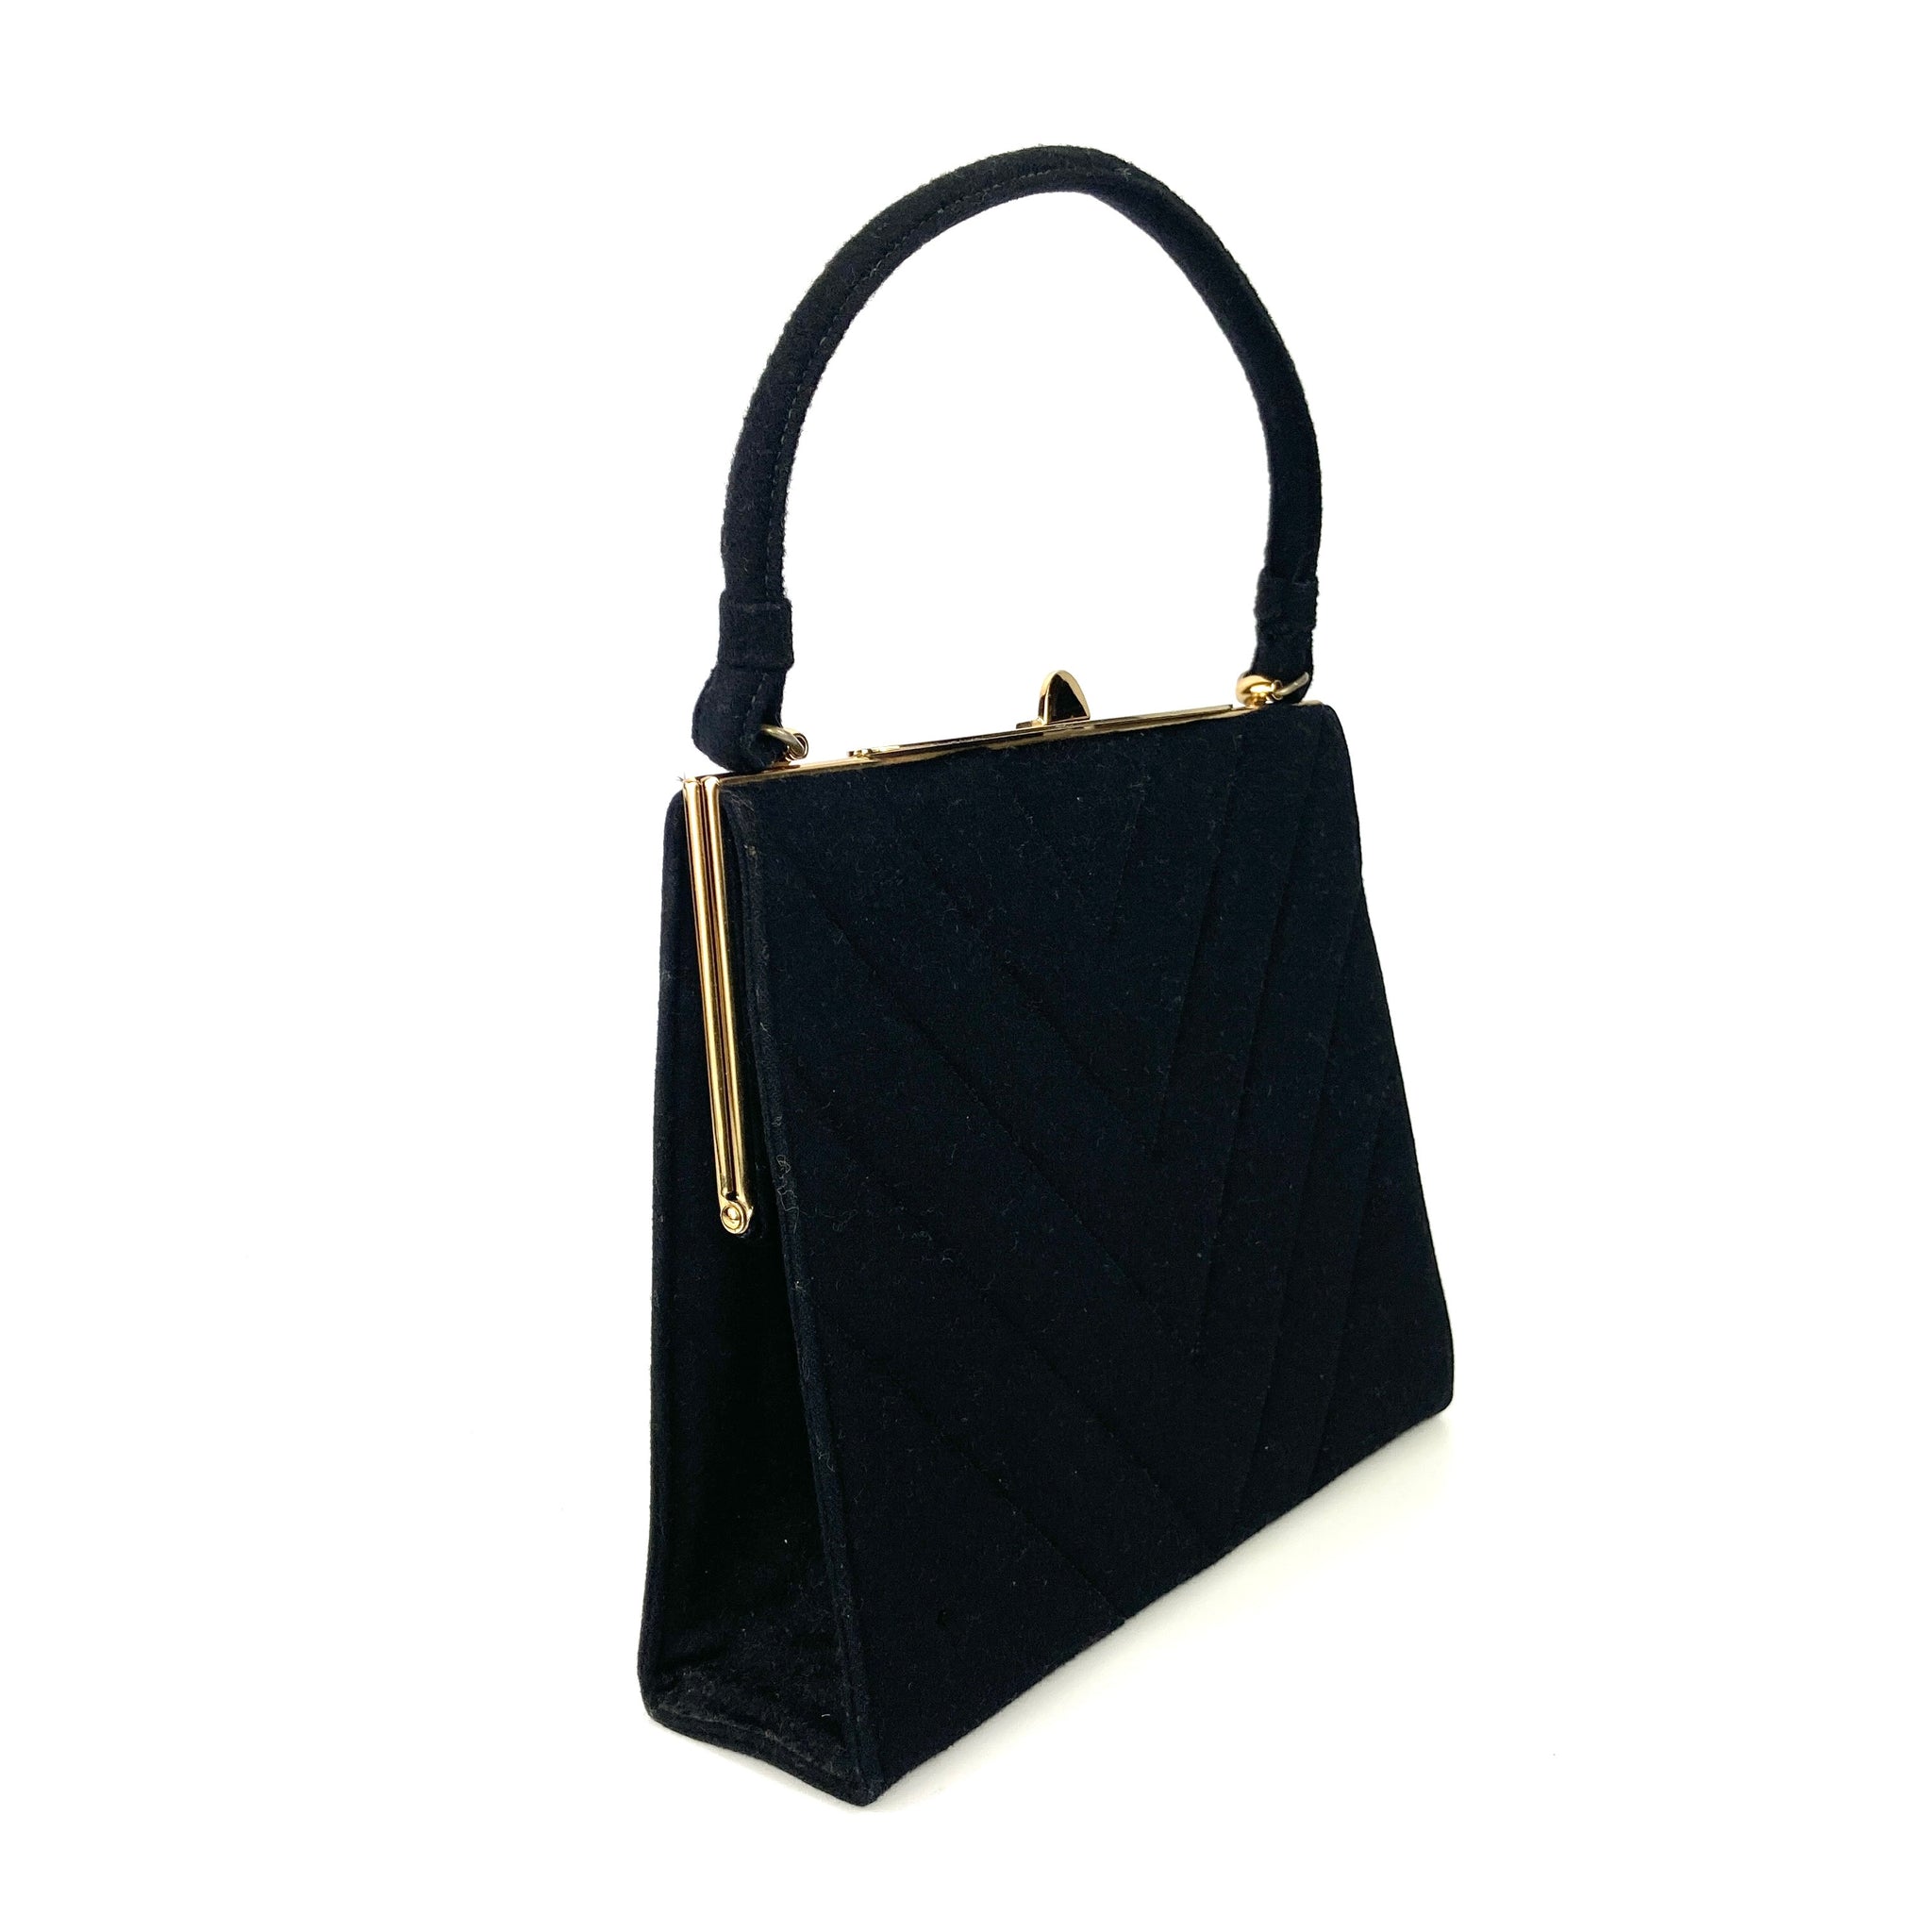 BRAND NEW Vintage Arnold Palmer Black Leather Handbag Purse Shoulder Bag  Tote | eBay